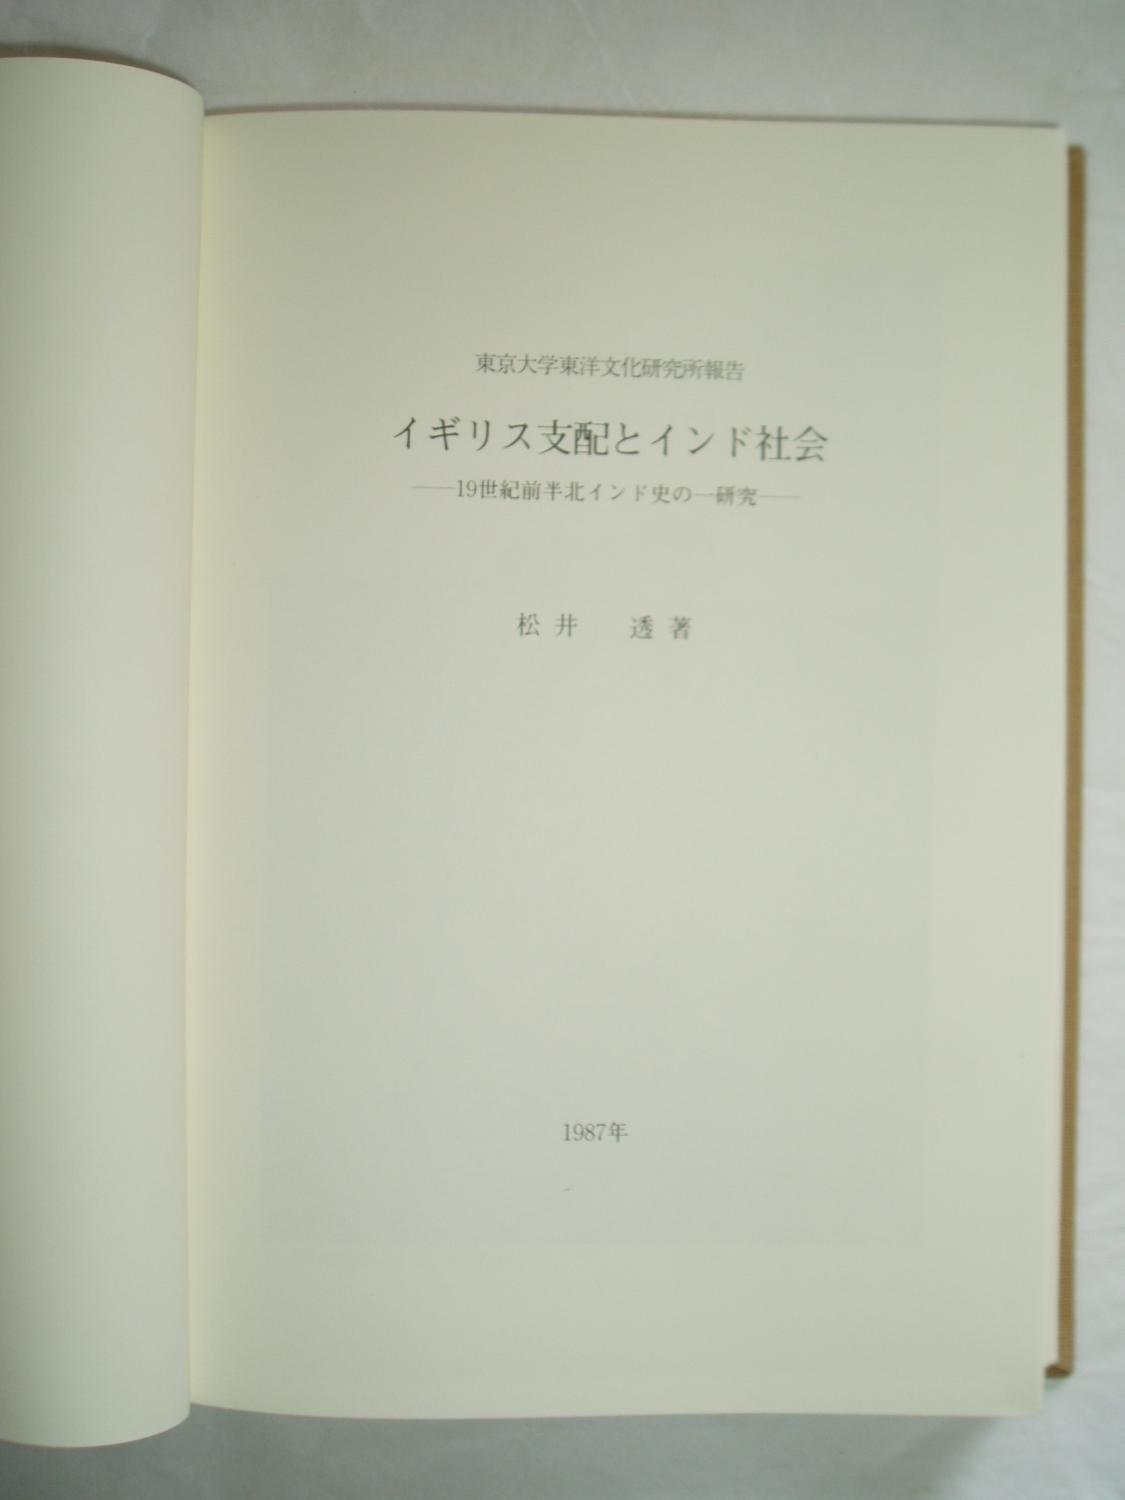 Igirisu　Minor　Kita　rubbing,　Expatriate　Matsui,　kenkyu　shihai　orig.　Toru:　of　to　Bookshop　Indo　ichi　VG.　shakai　shi　(1987)　cloth　19-seiki　zenpan　by　Indo　no　Denmark